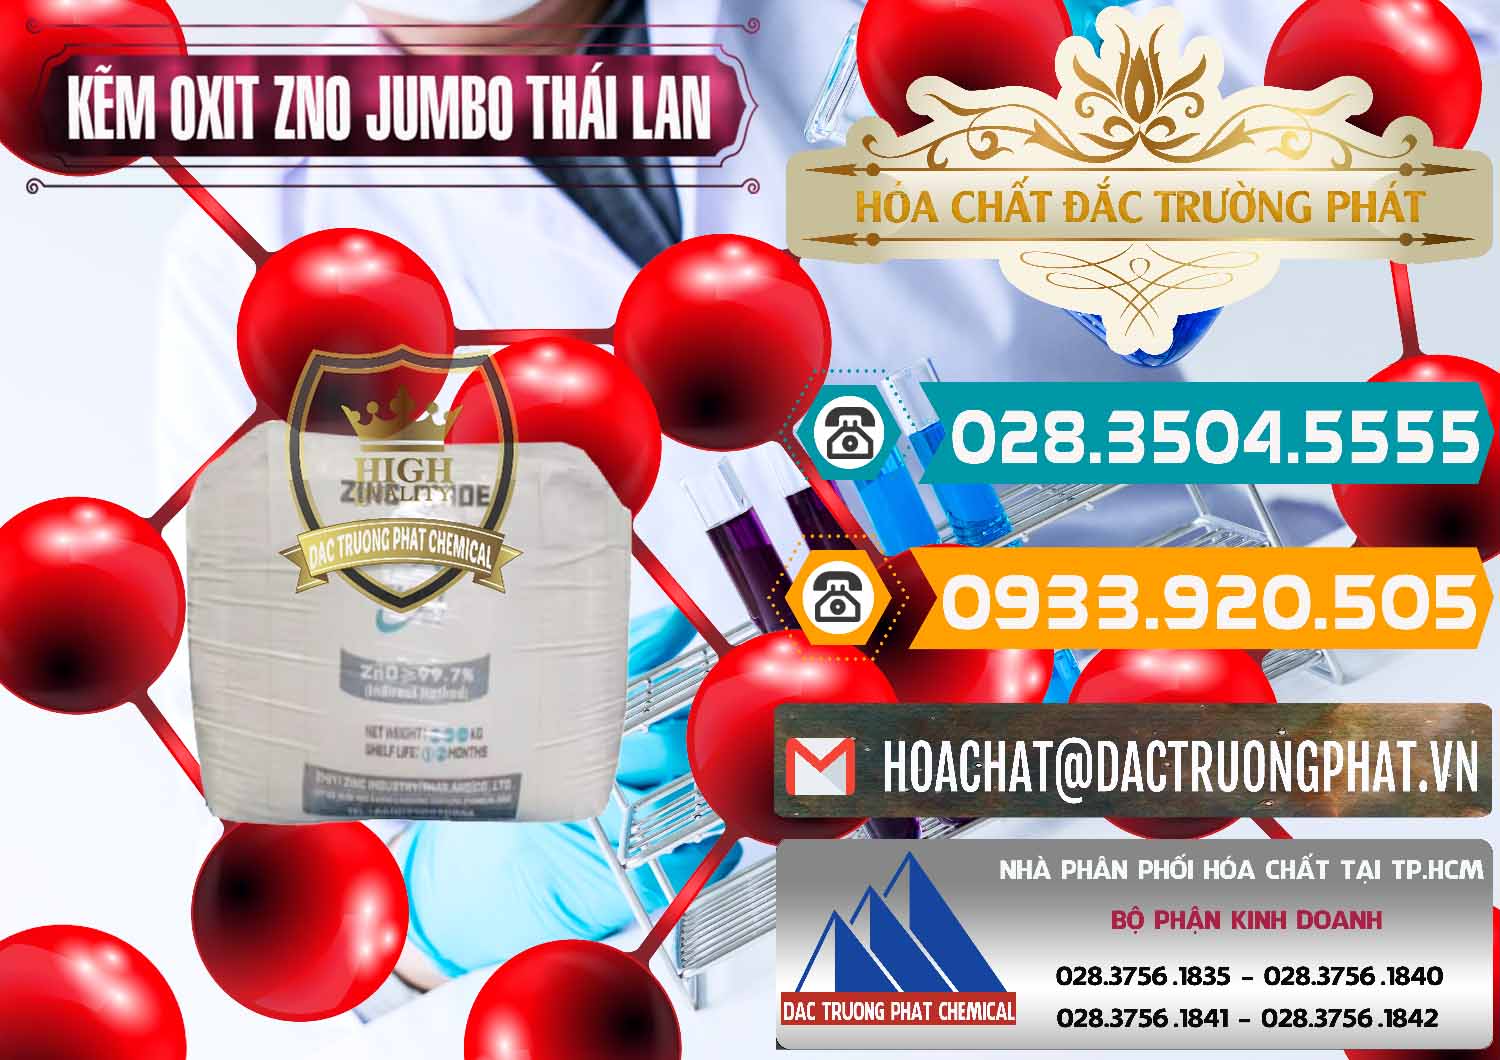 Cty chuyên nhập khẩu ( bán ) Zinc Oxide - Bột Kẽm Oxit ZNO Jumbo Bành Thái Lan Thailand - 0370 - Nơi chuyên phân phối ( bán ) hóa chất tại TP.HCM - congtyhoachat.vn